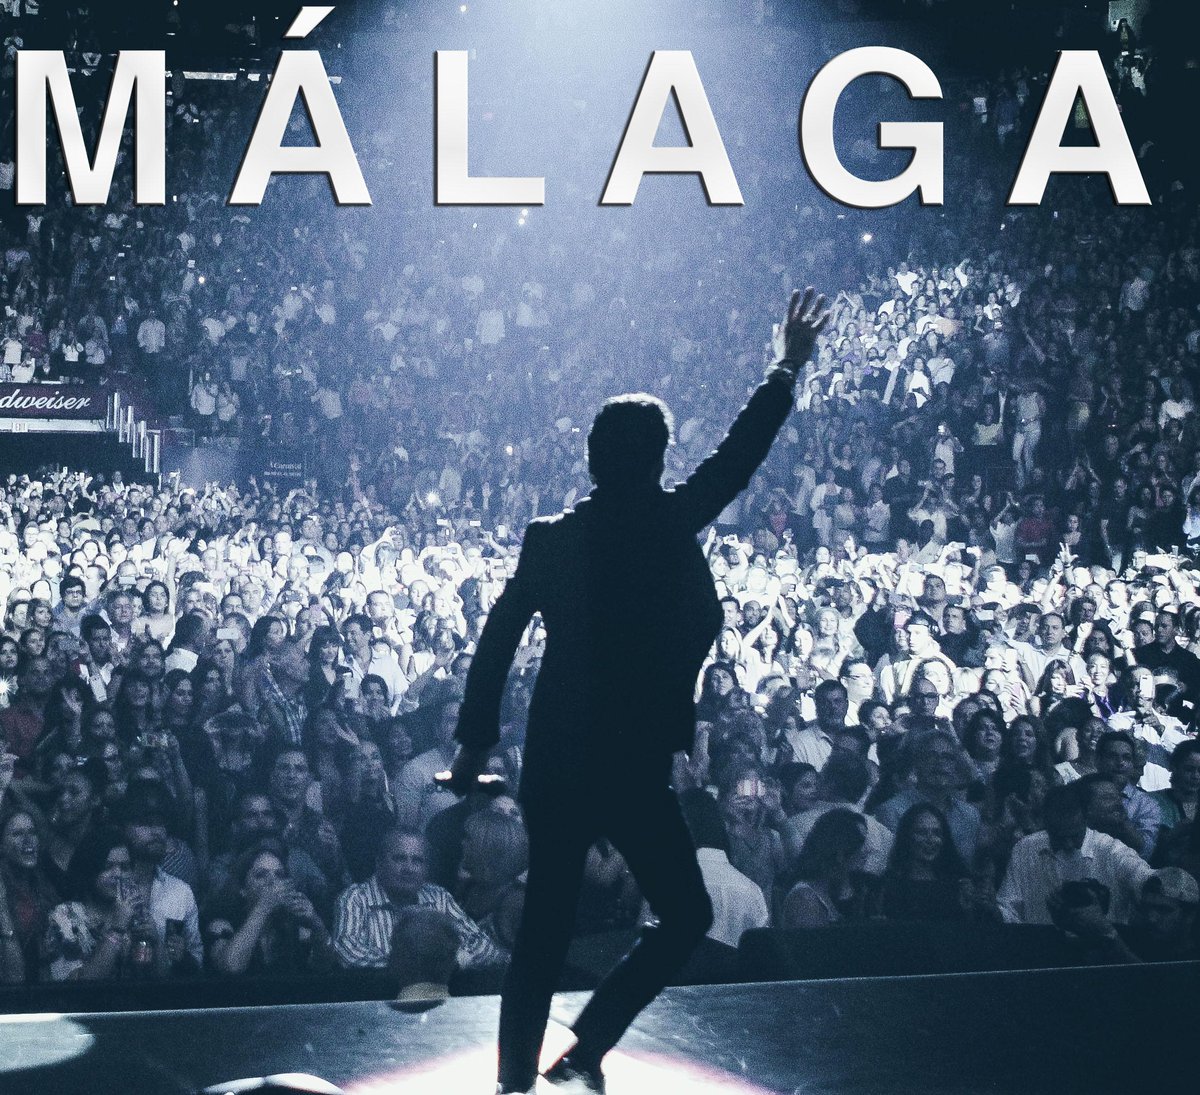 Gracias #Malaga! Este show fue increíble! #ESPAÑA espero poder regresar pronto! #CambioDePiel #Tour2015 #VivirMiVida http://t.co/rTWQCkS9EI